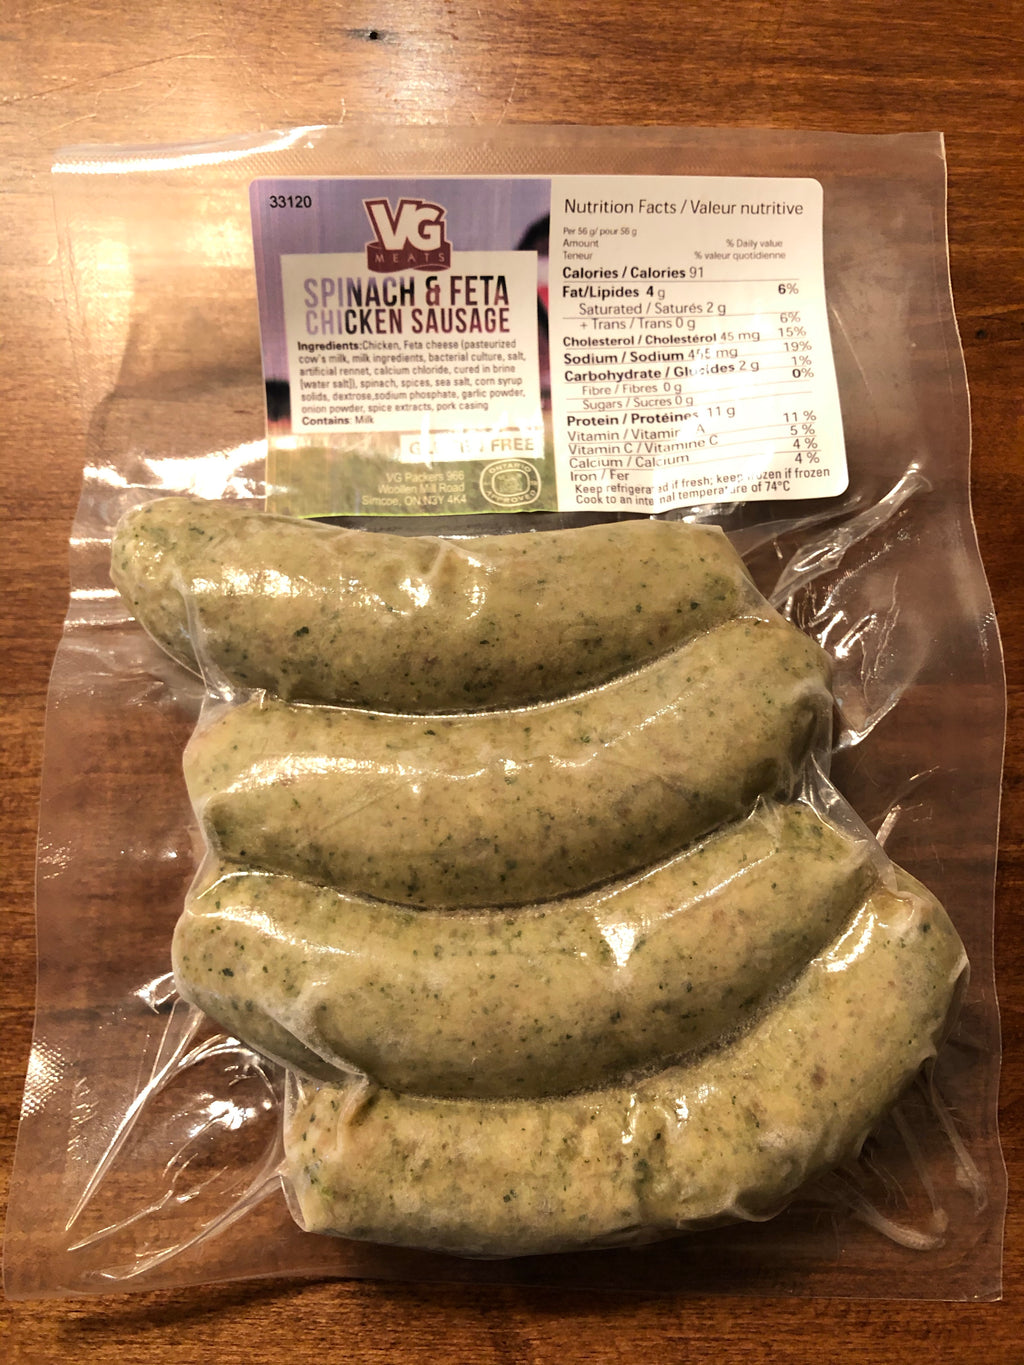 VG Chicken Sausage - Spinach & Feta